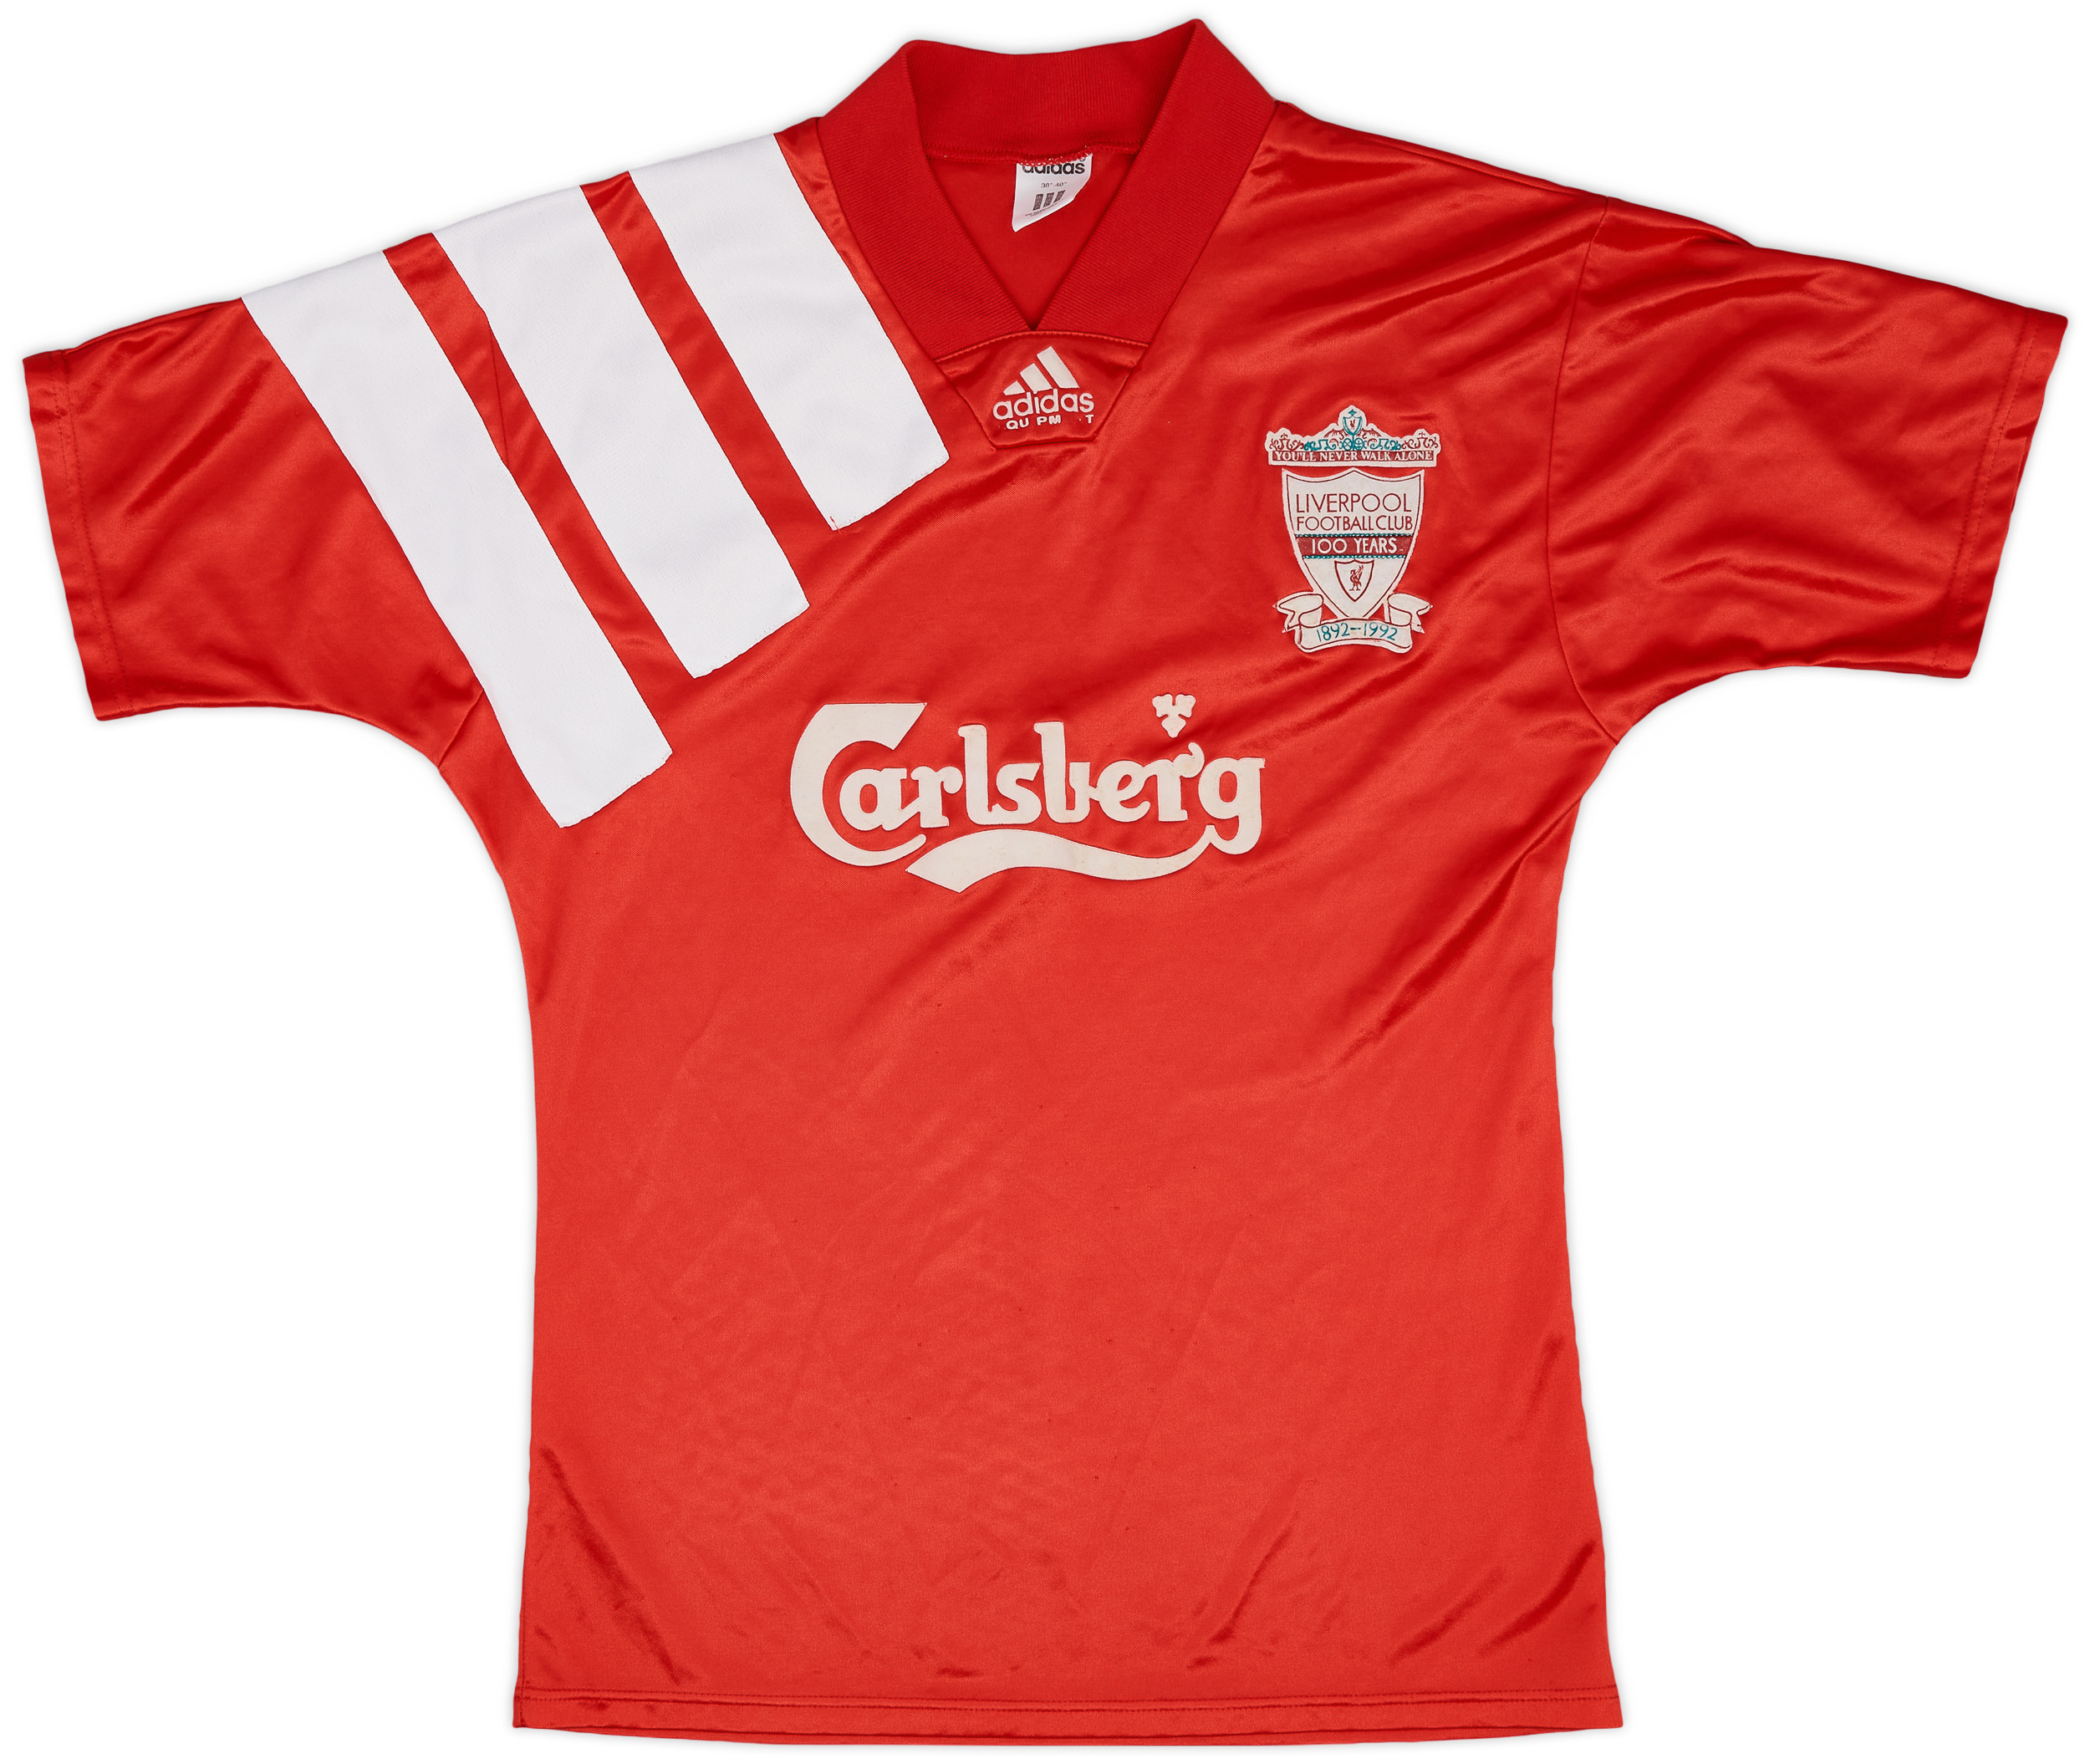 1992-93 Liverpool Centenary Home Shirt - 6/10 - ()